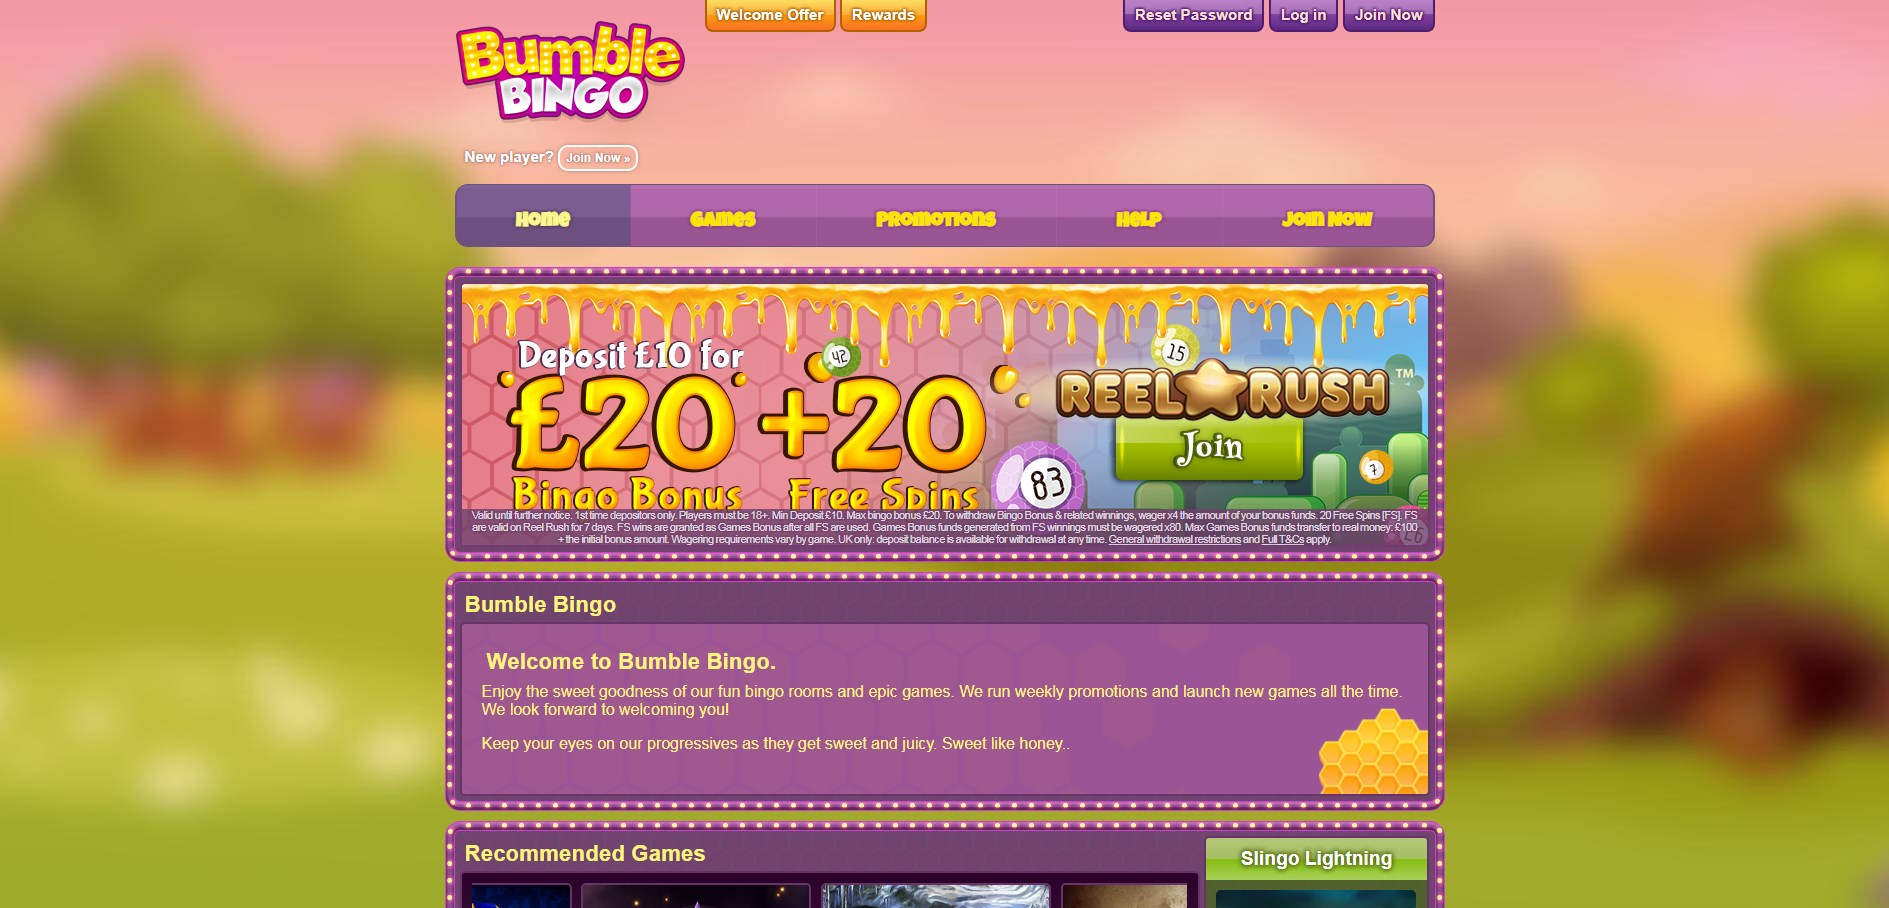 Bumble Bingo Casino Review